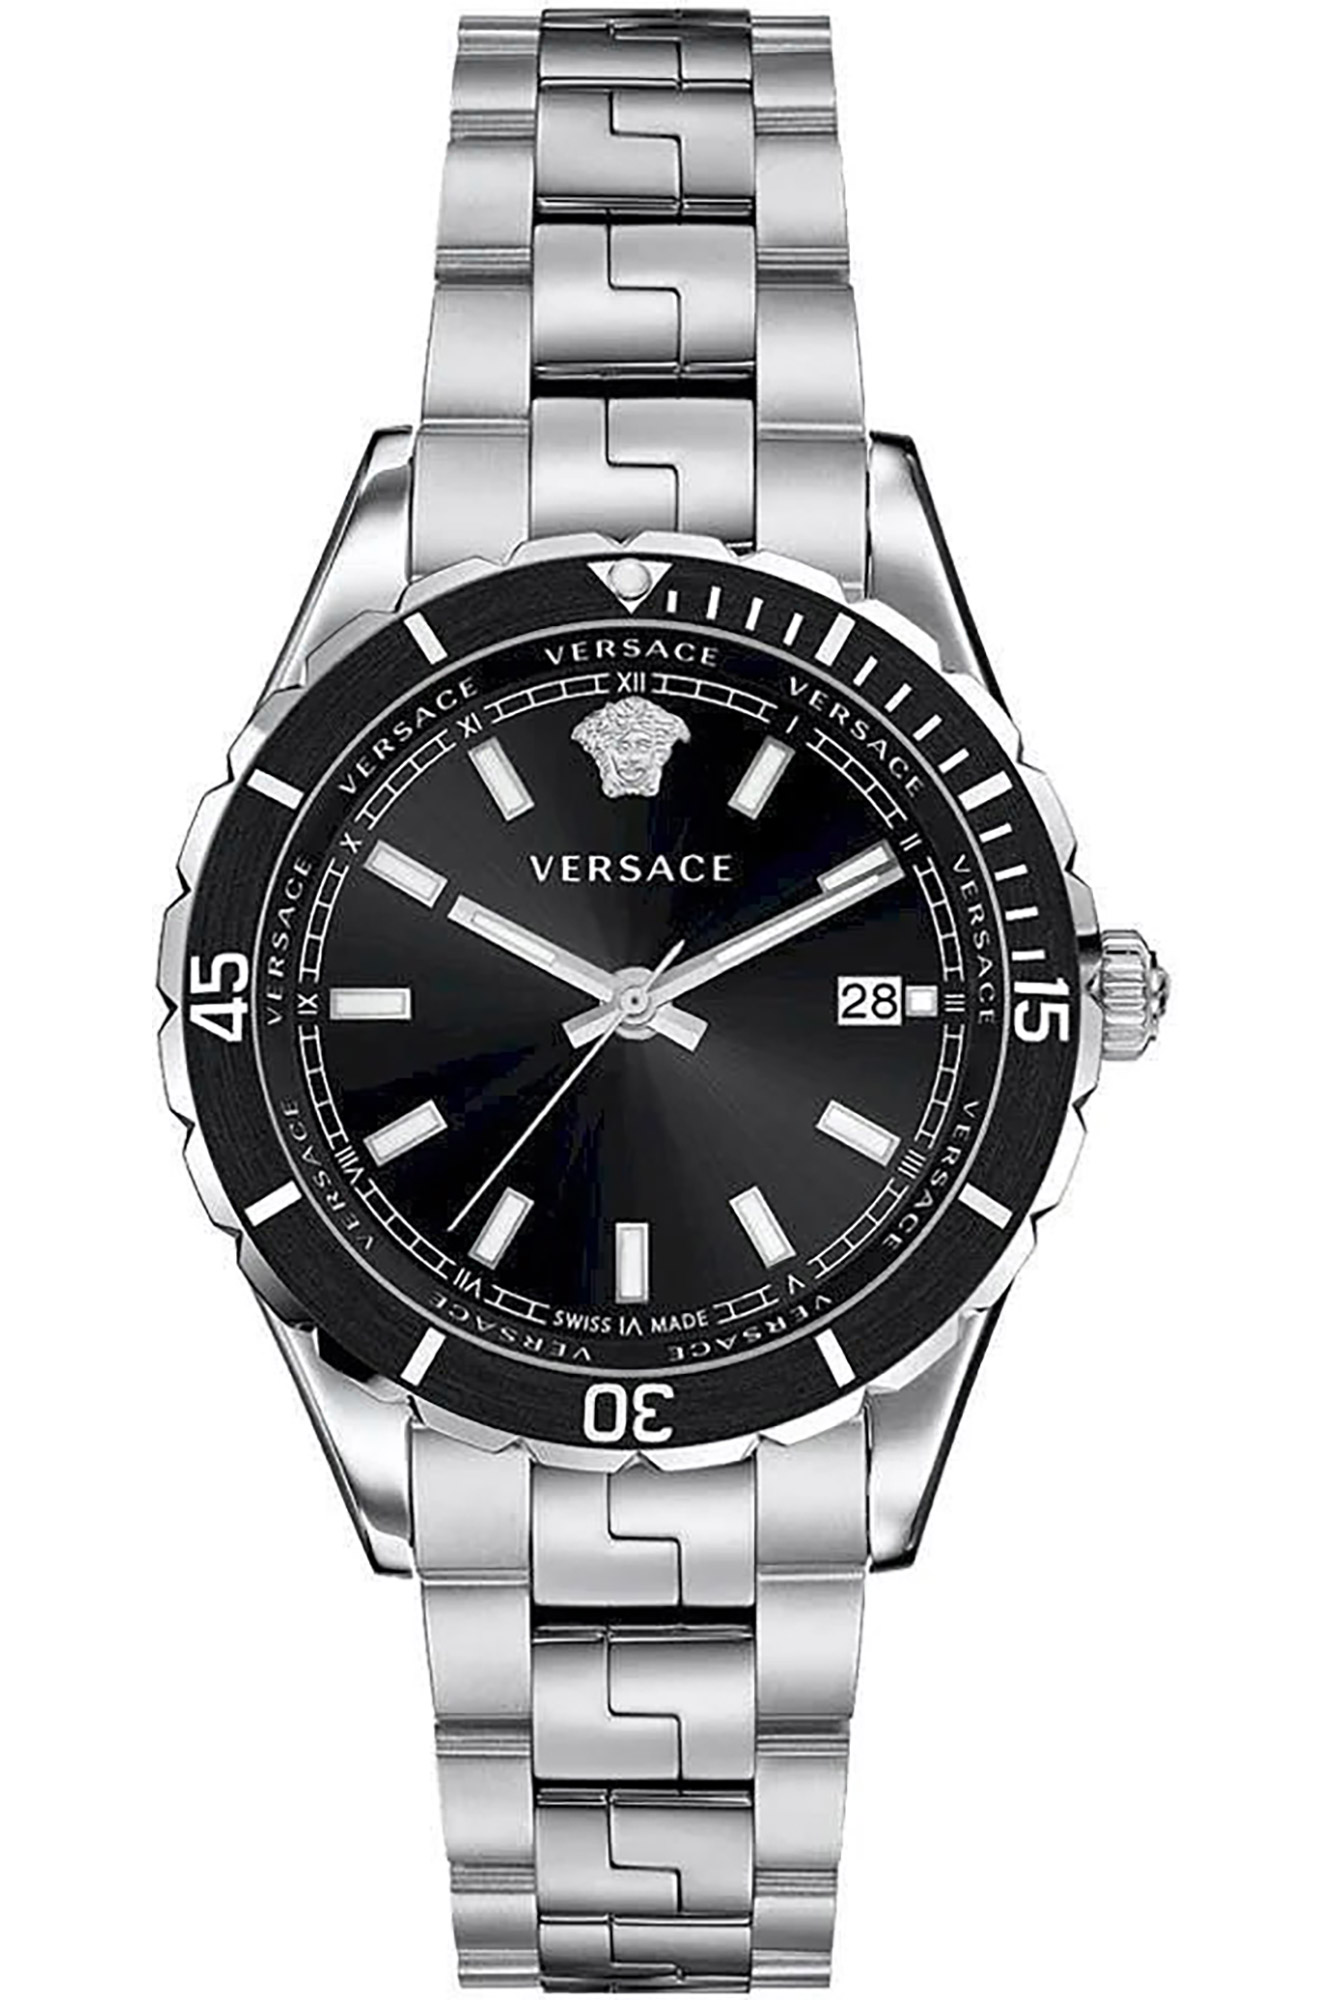 Watch Versace ve3a00520